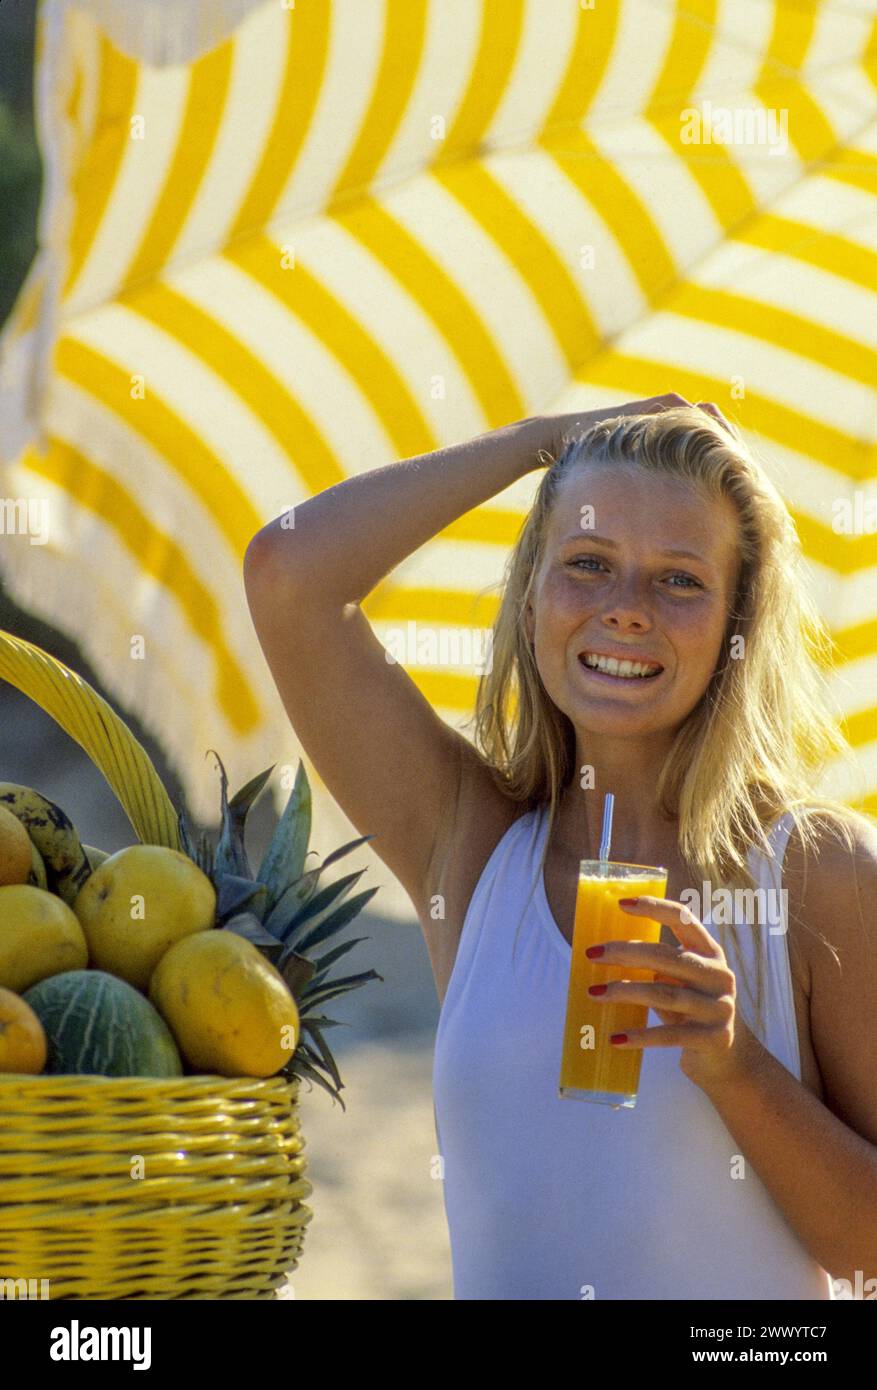 capelli biondi bella giovane donna attraente che guarda davanti alla macchina fotografica sorridere bevendo succo d'arancia un cesto di frutta laterale ombrello giallo sul retro Foto Stock